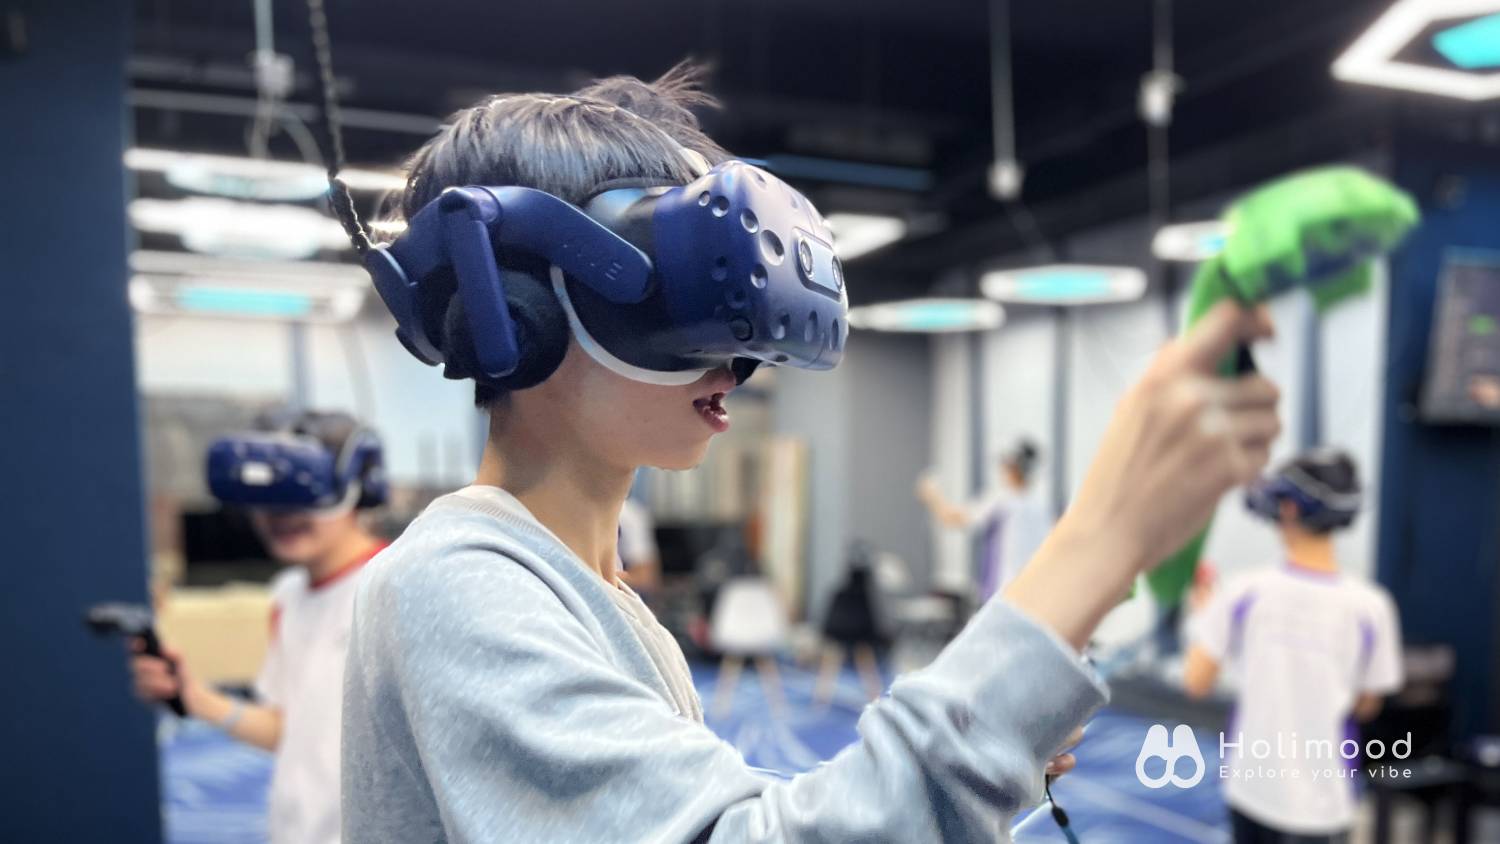 V-Owl Station VR Party 虛擬實境體驗站 【VR體驗】90分鐘特選VR故事遊戲 (送4D動感太空艙體驗) 11